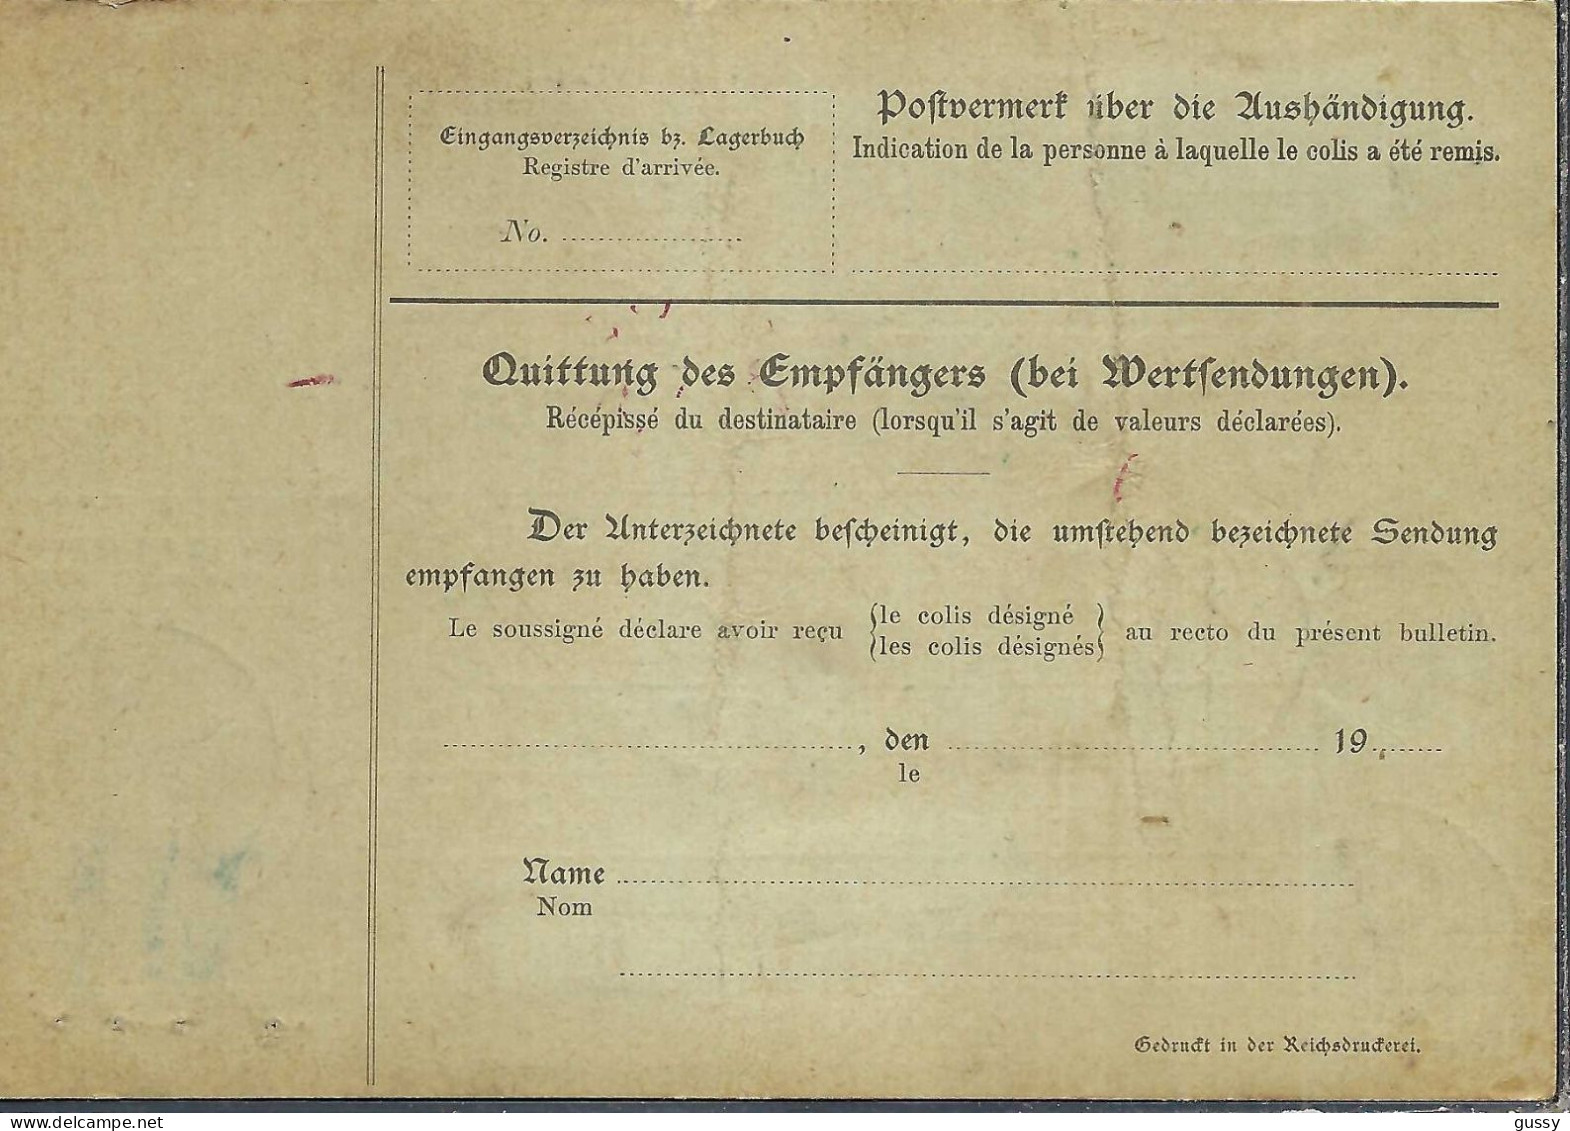 ALLEMAGNE Ca.1908: Bulletin D'Expédition De Berlin Pour Genève (Suisse) - Covers & Documents